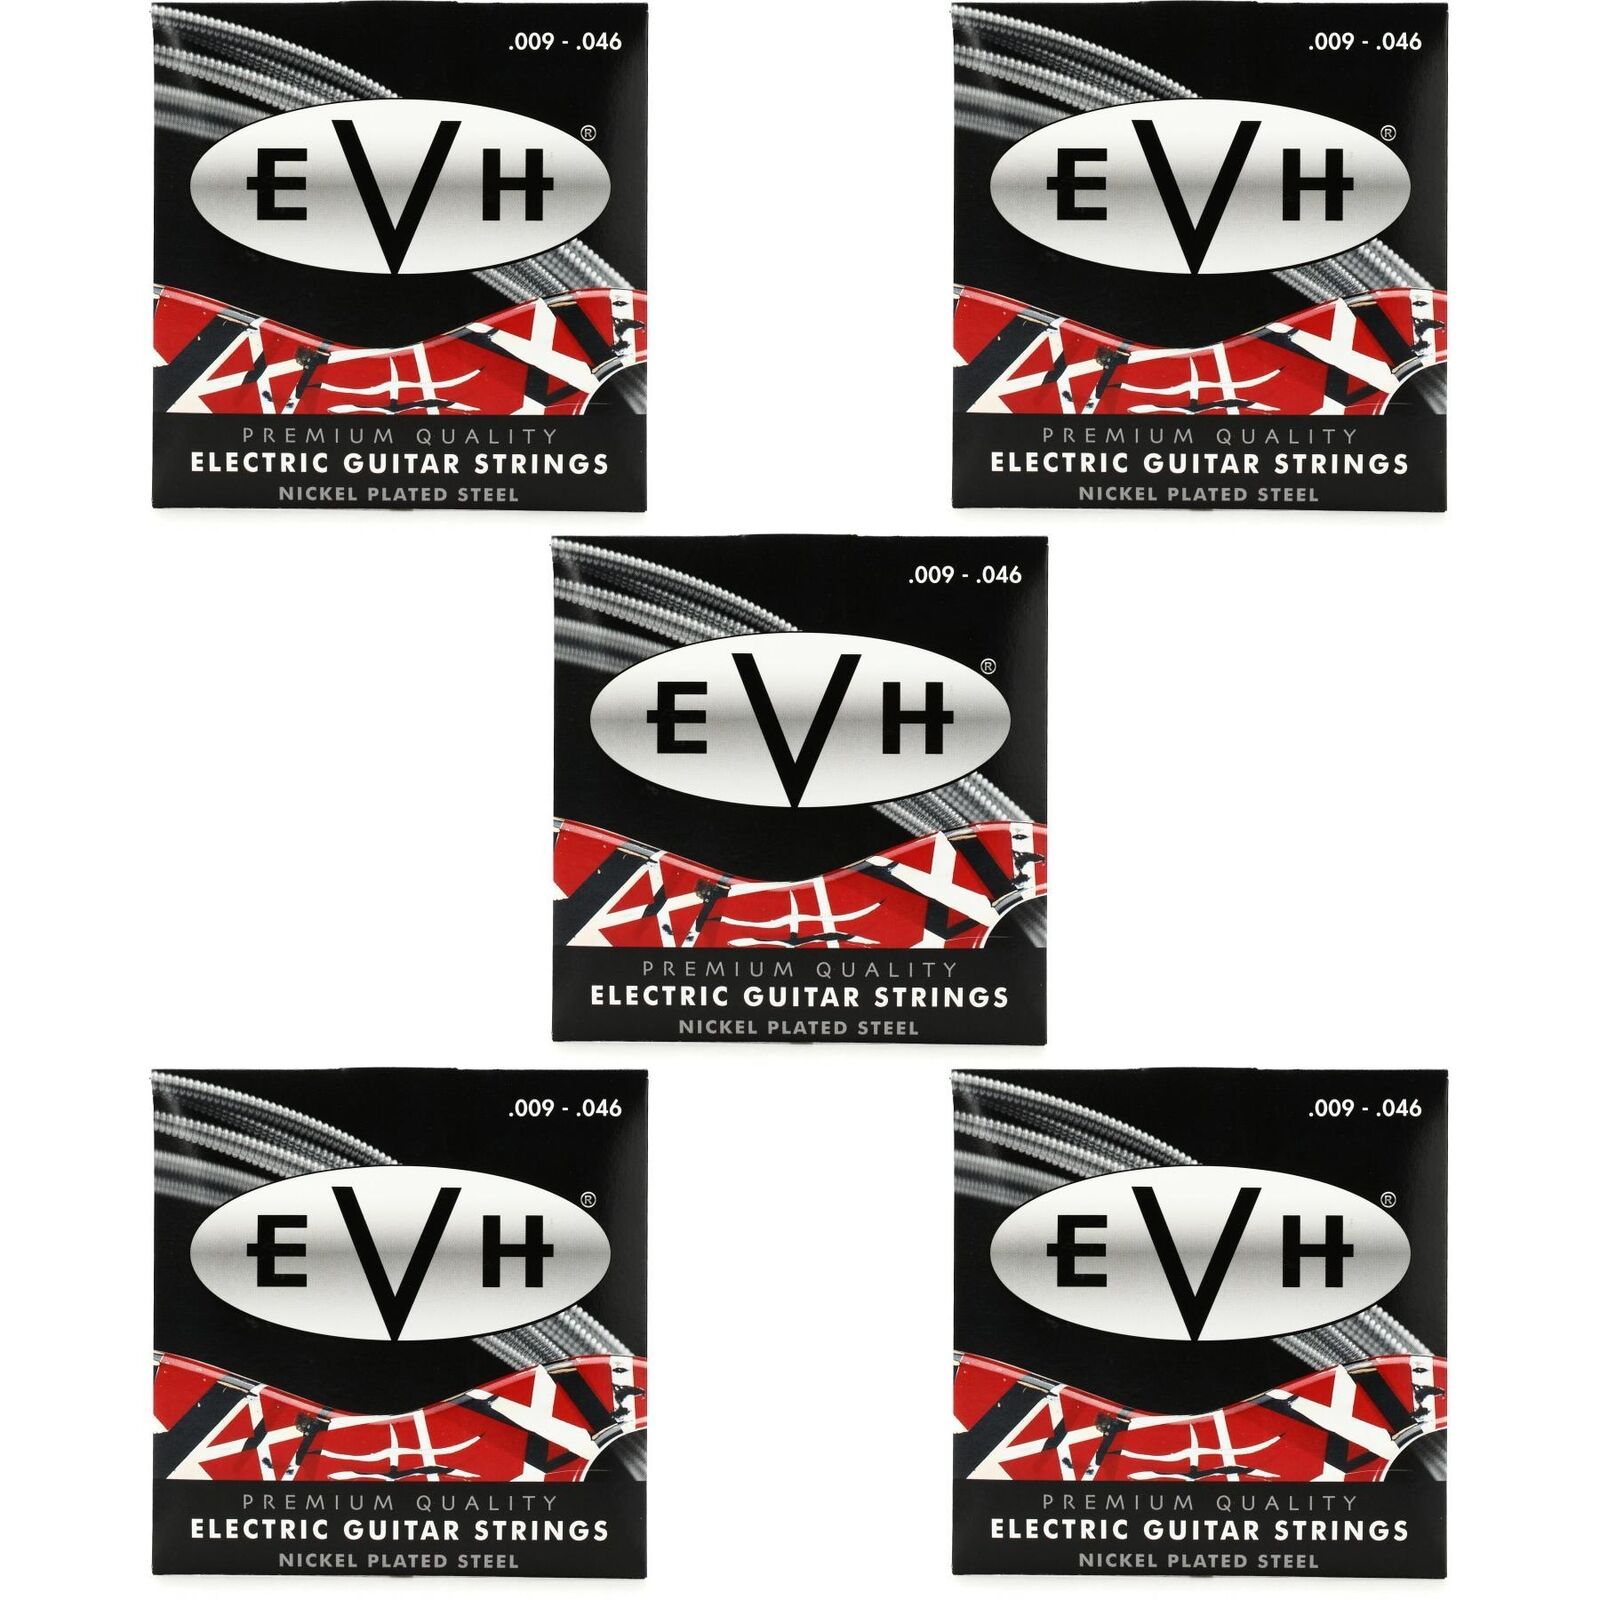 EVH 5 pack guitar string set (9-46 gauge) $33.70